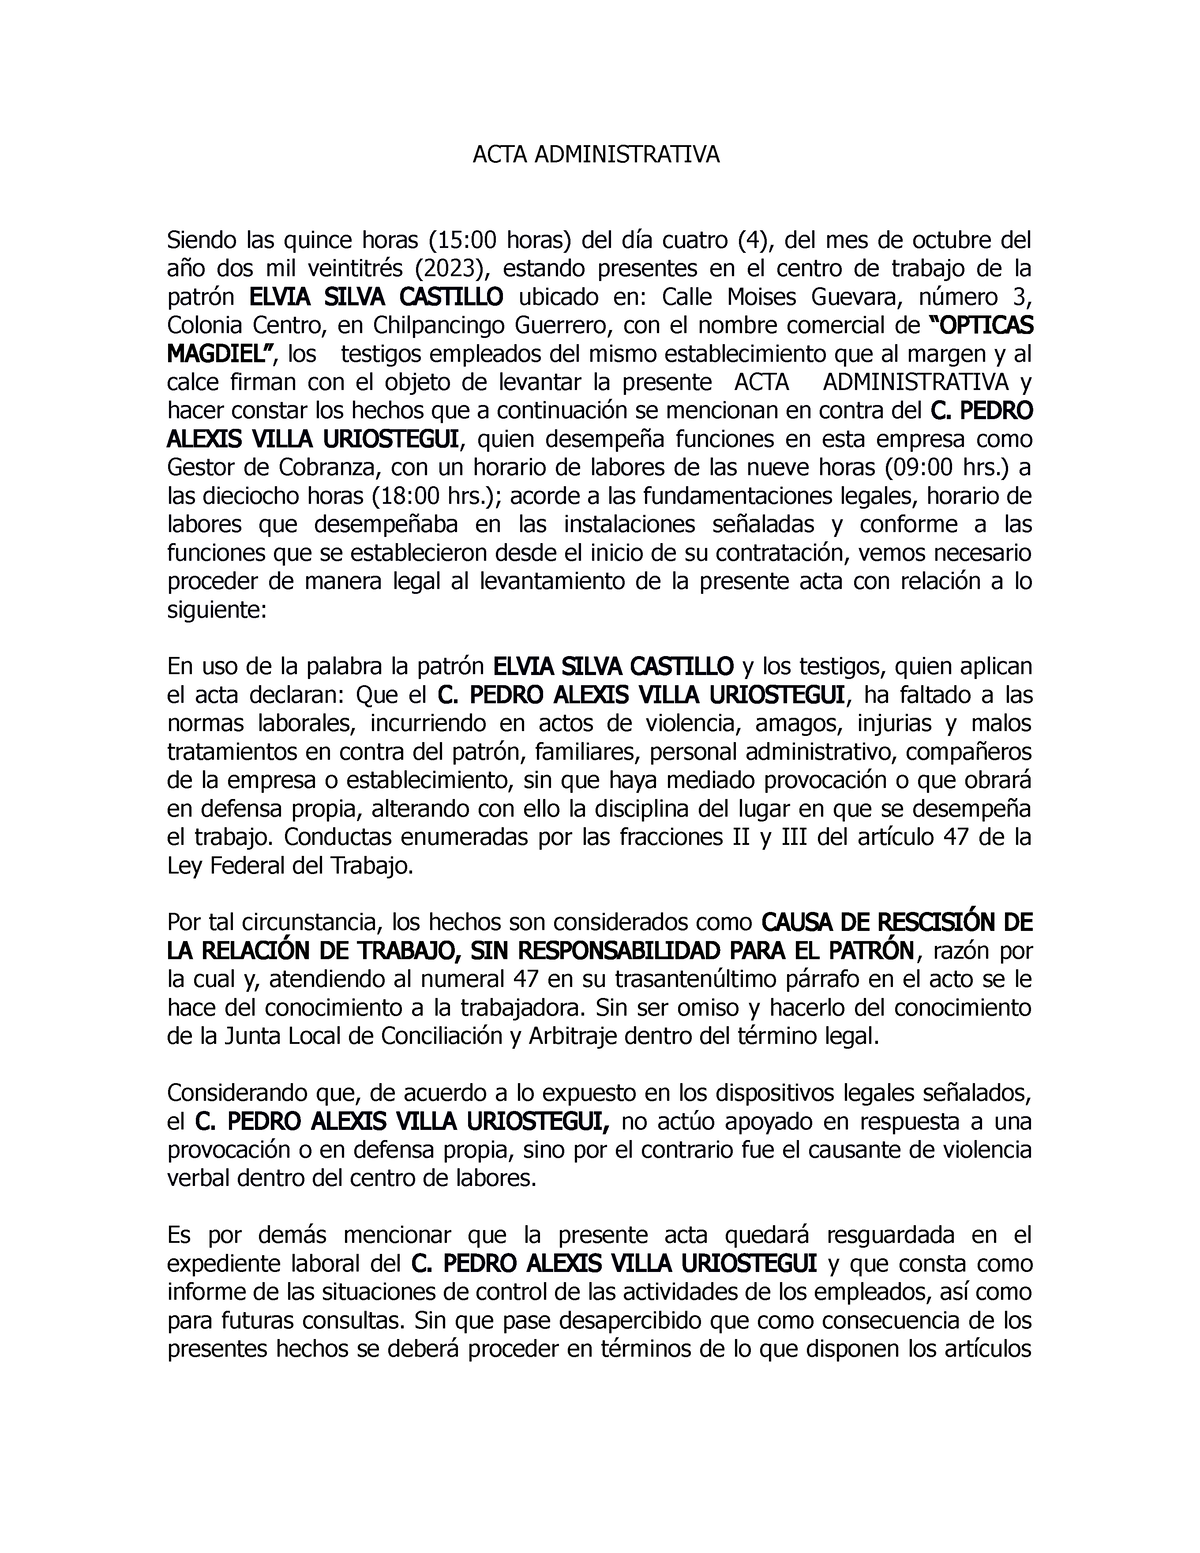 ACTA Administrativa Pedro Alexis - ACTA ADMINISTRATIVA Siendo las ...